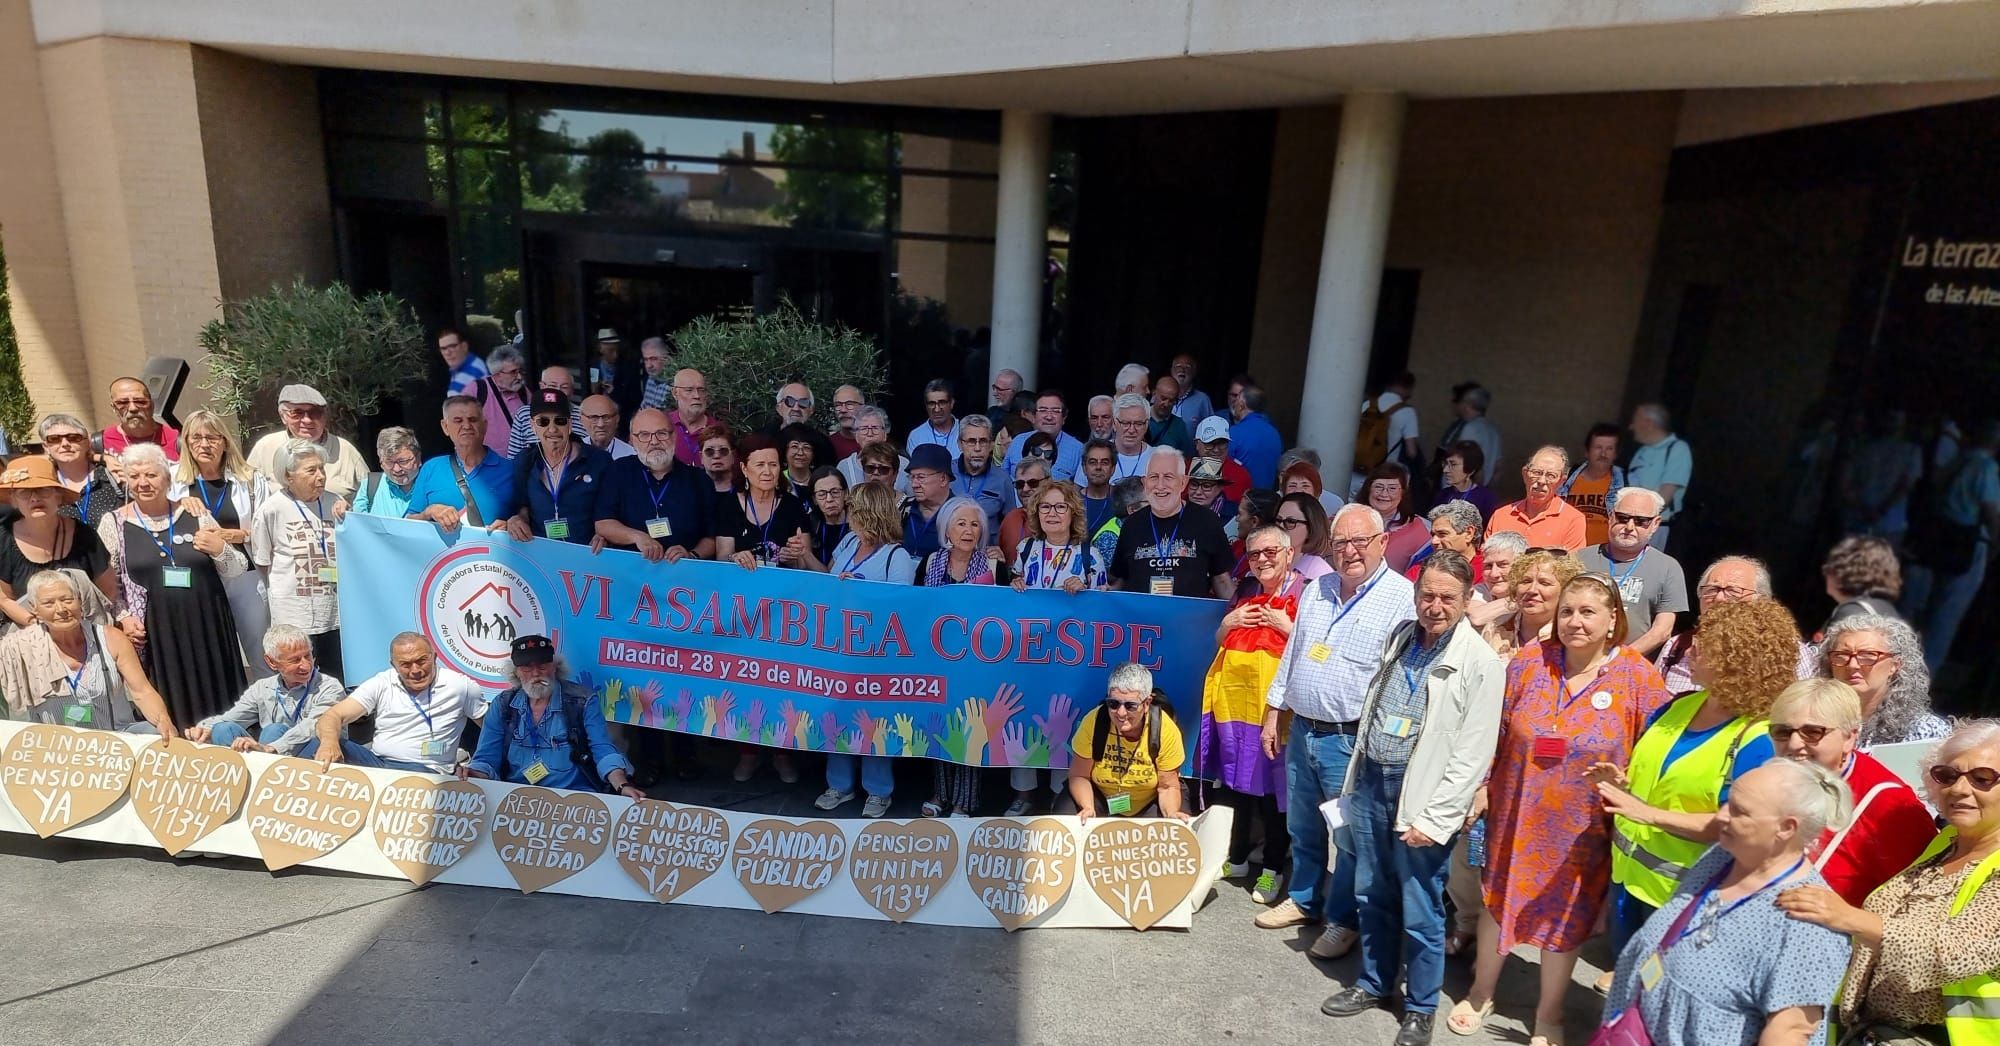 Coespe convoca una gran marcha por las pensiones en Madrid